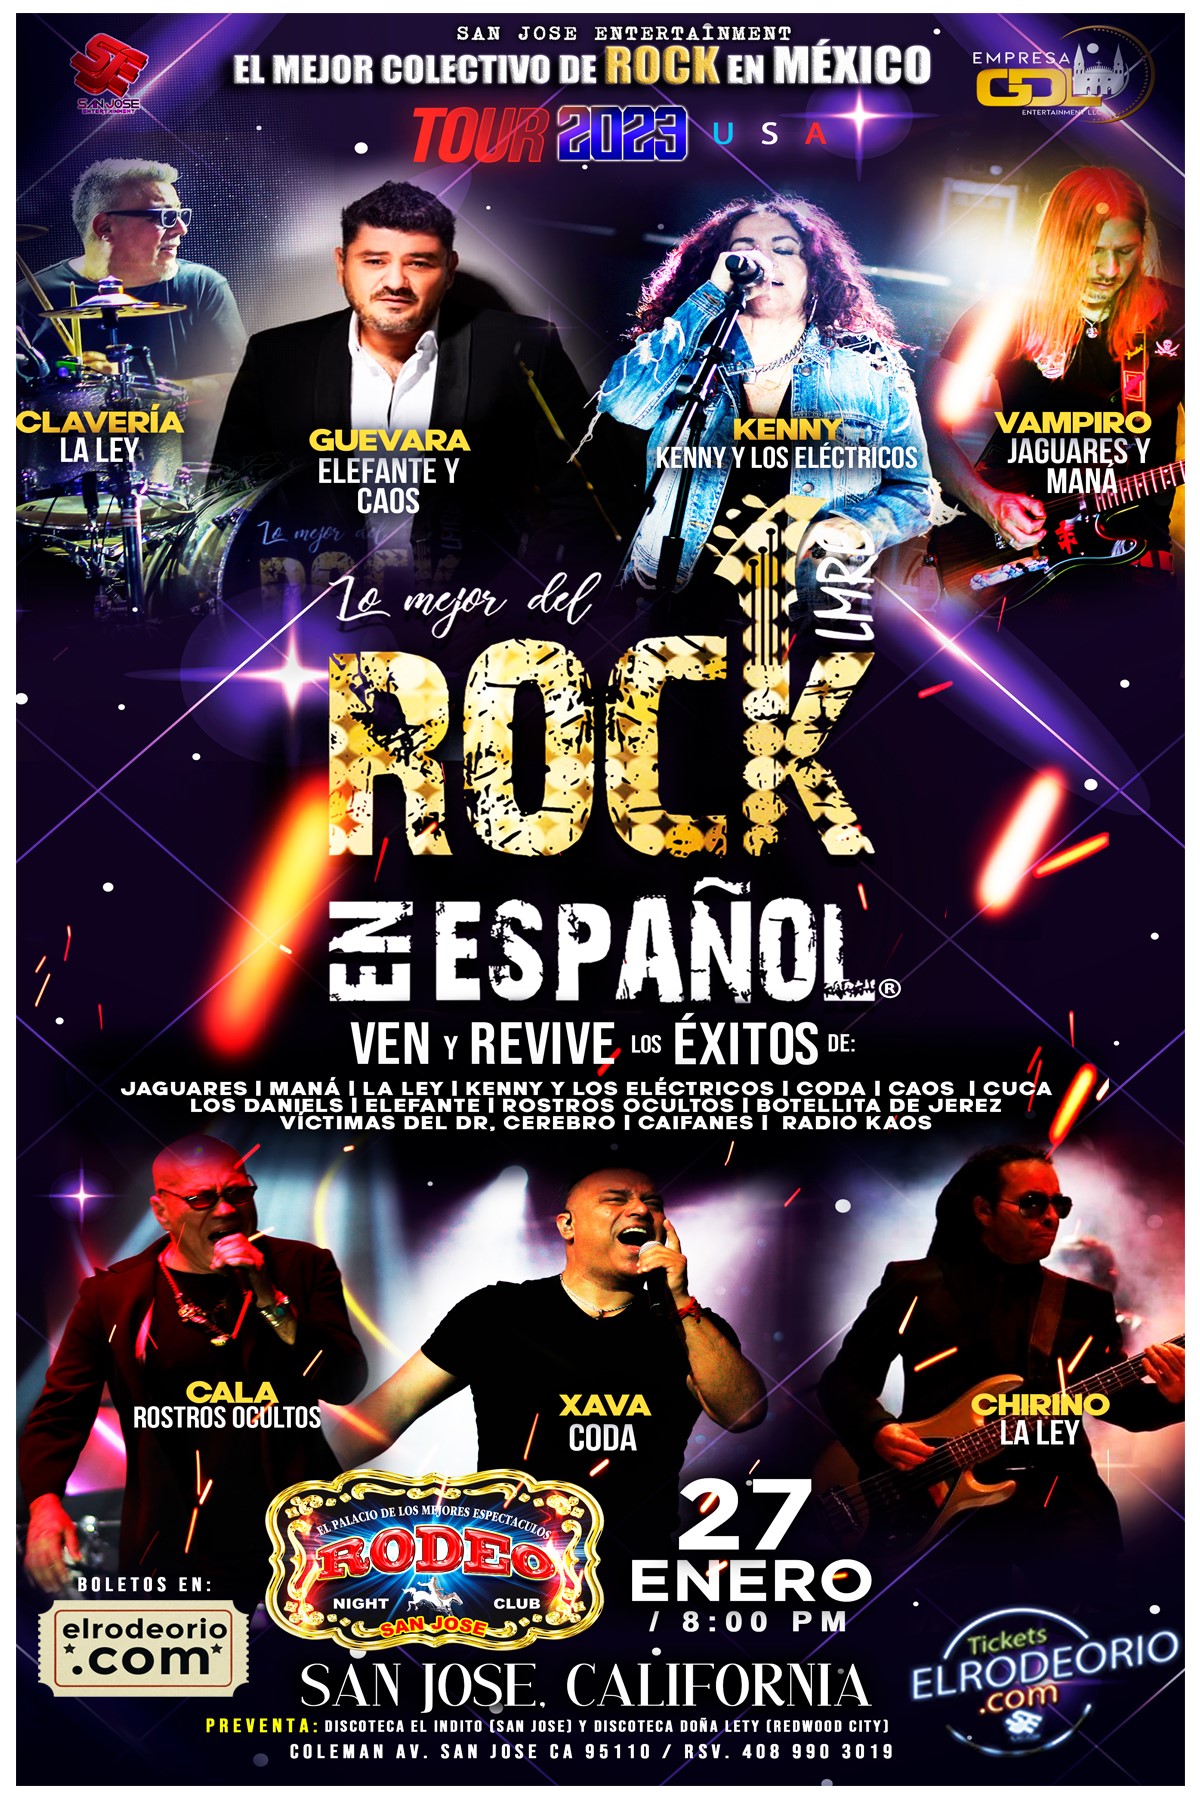 El Mejor Colectivo de Rock en Mexico Rock en Español!! Information